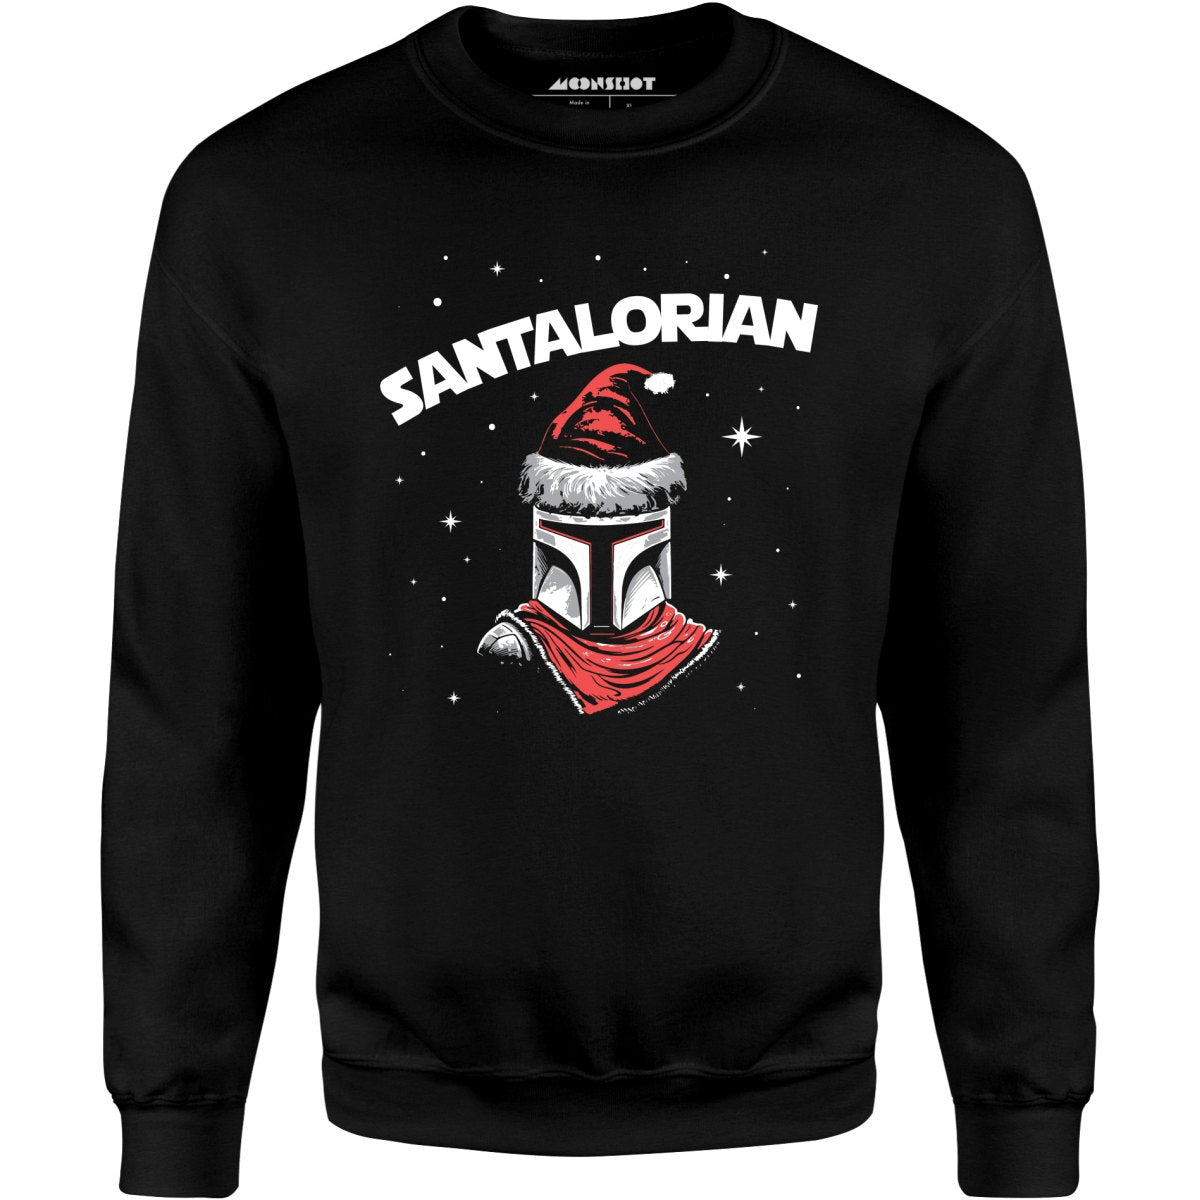 Santalorian - Unisex Sweatshirt